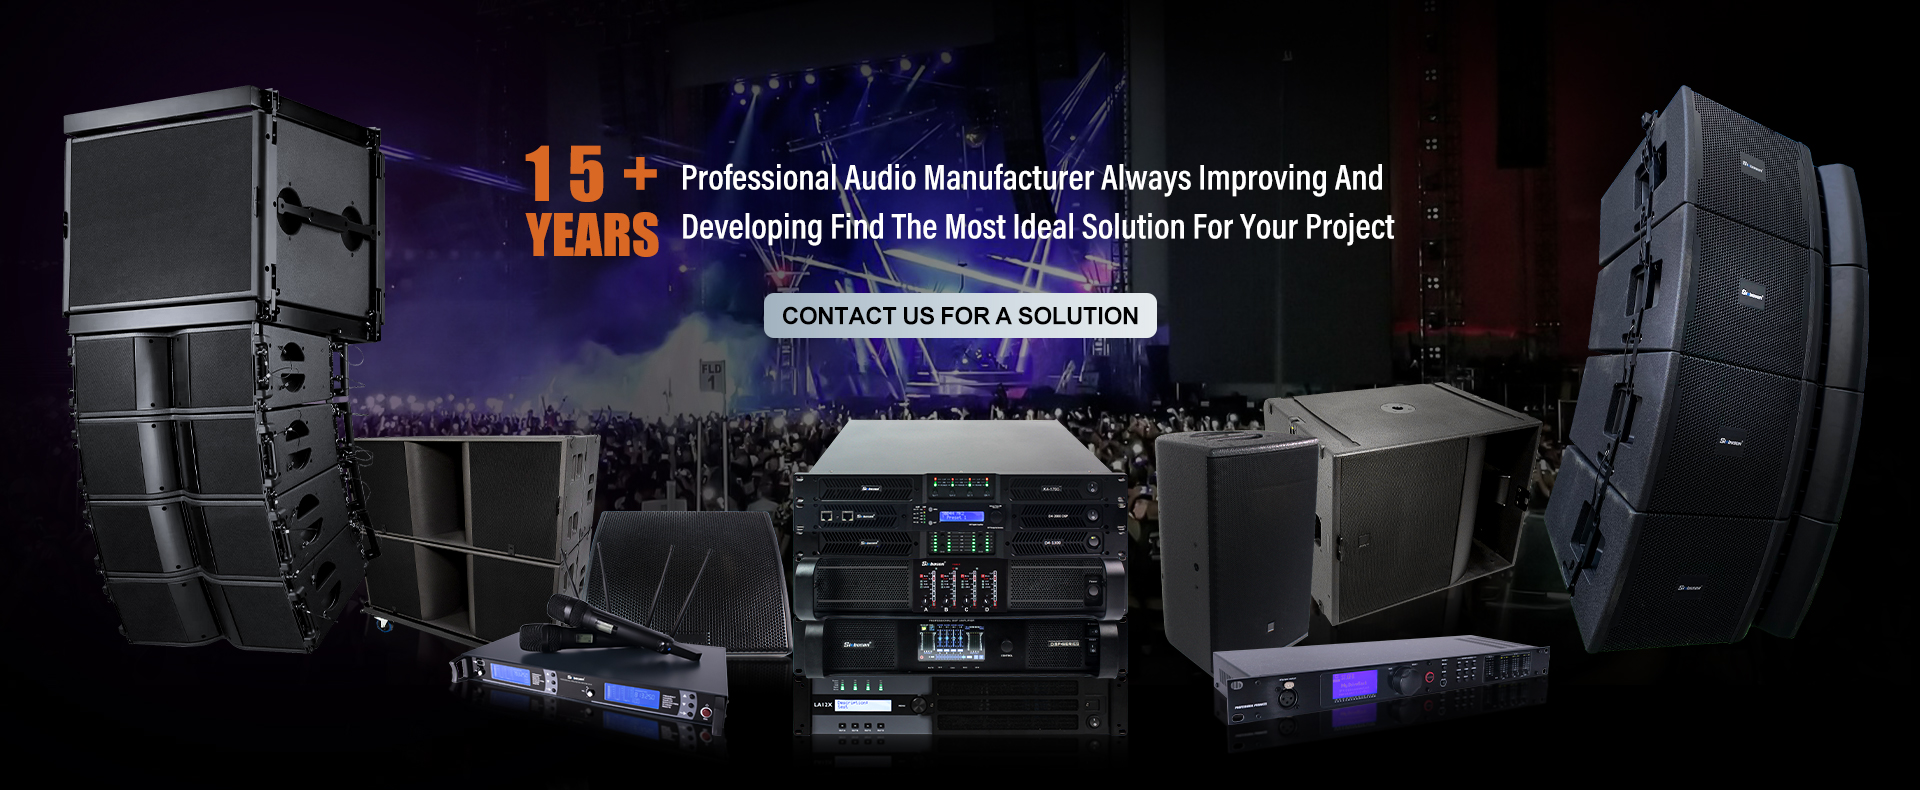 Sinbosen Audio Amplifier Manufacturer Mehr als 10 Jahre Erfahrung